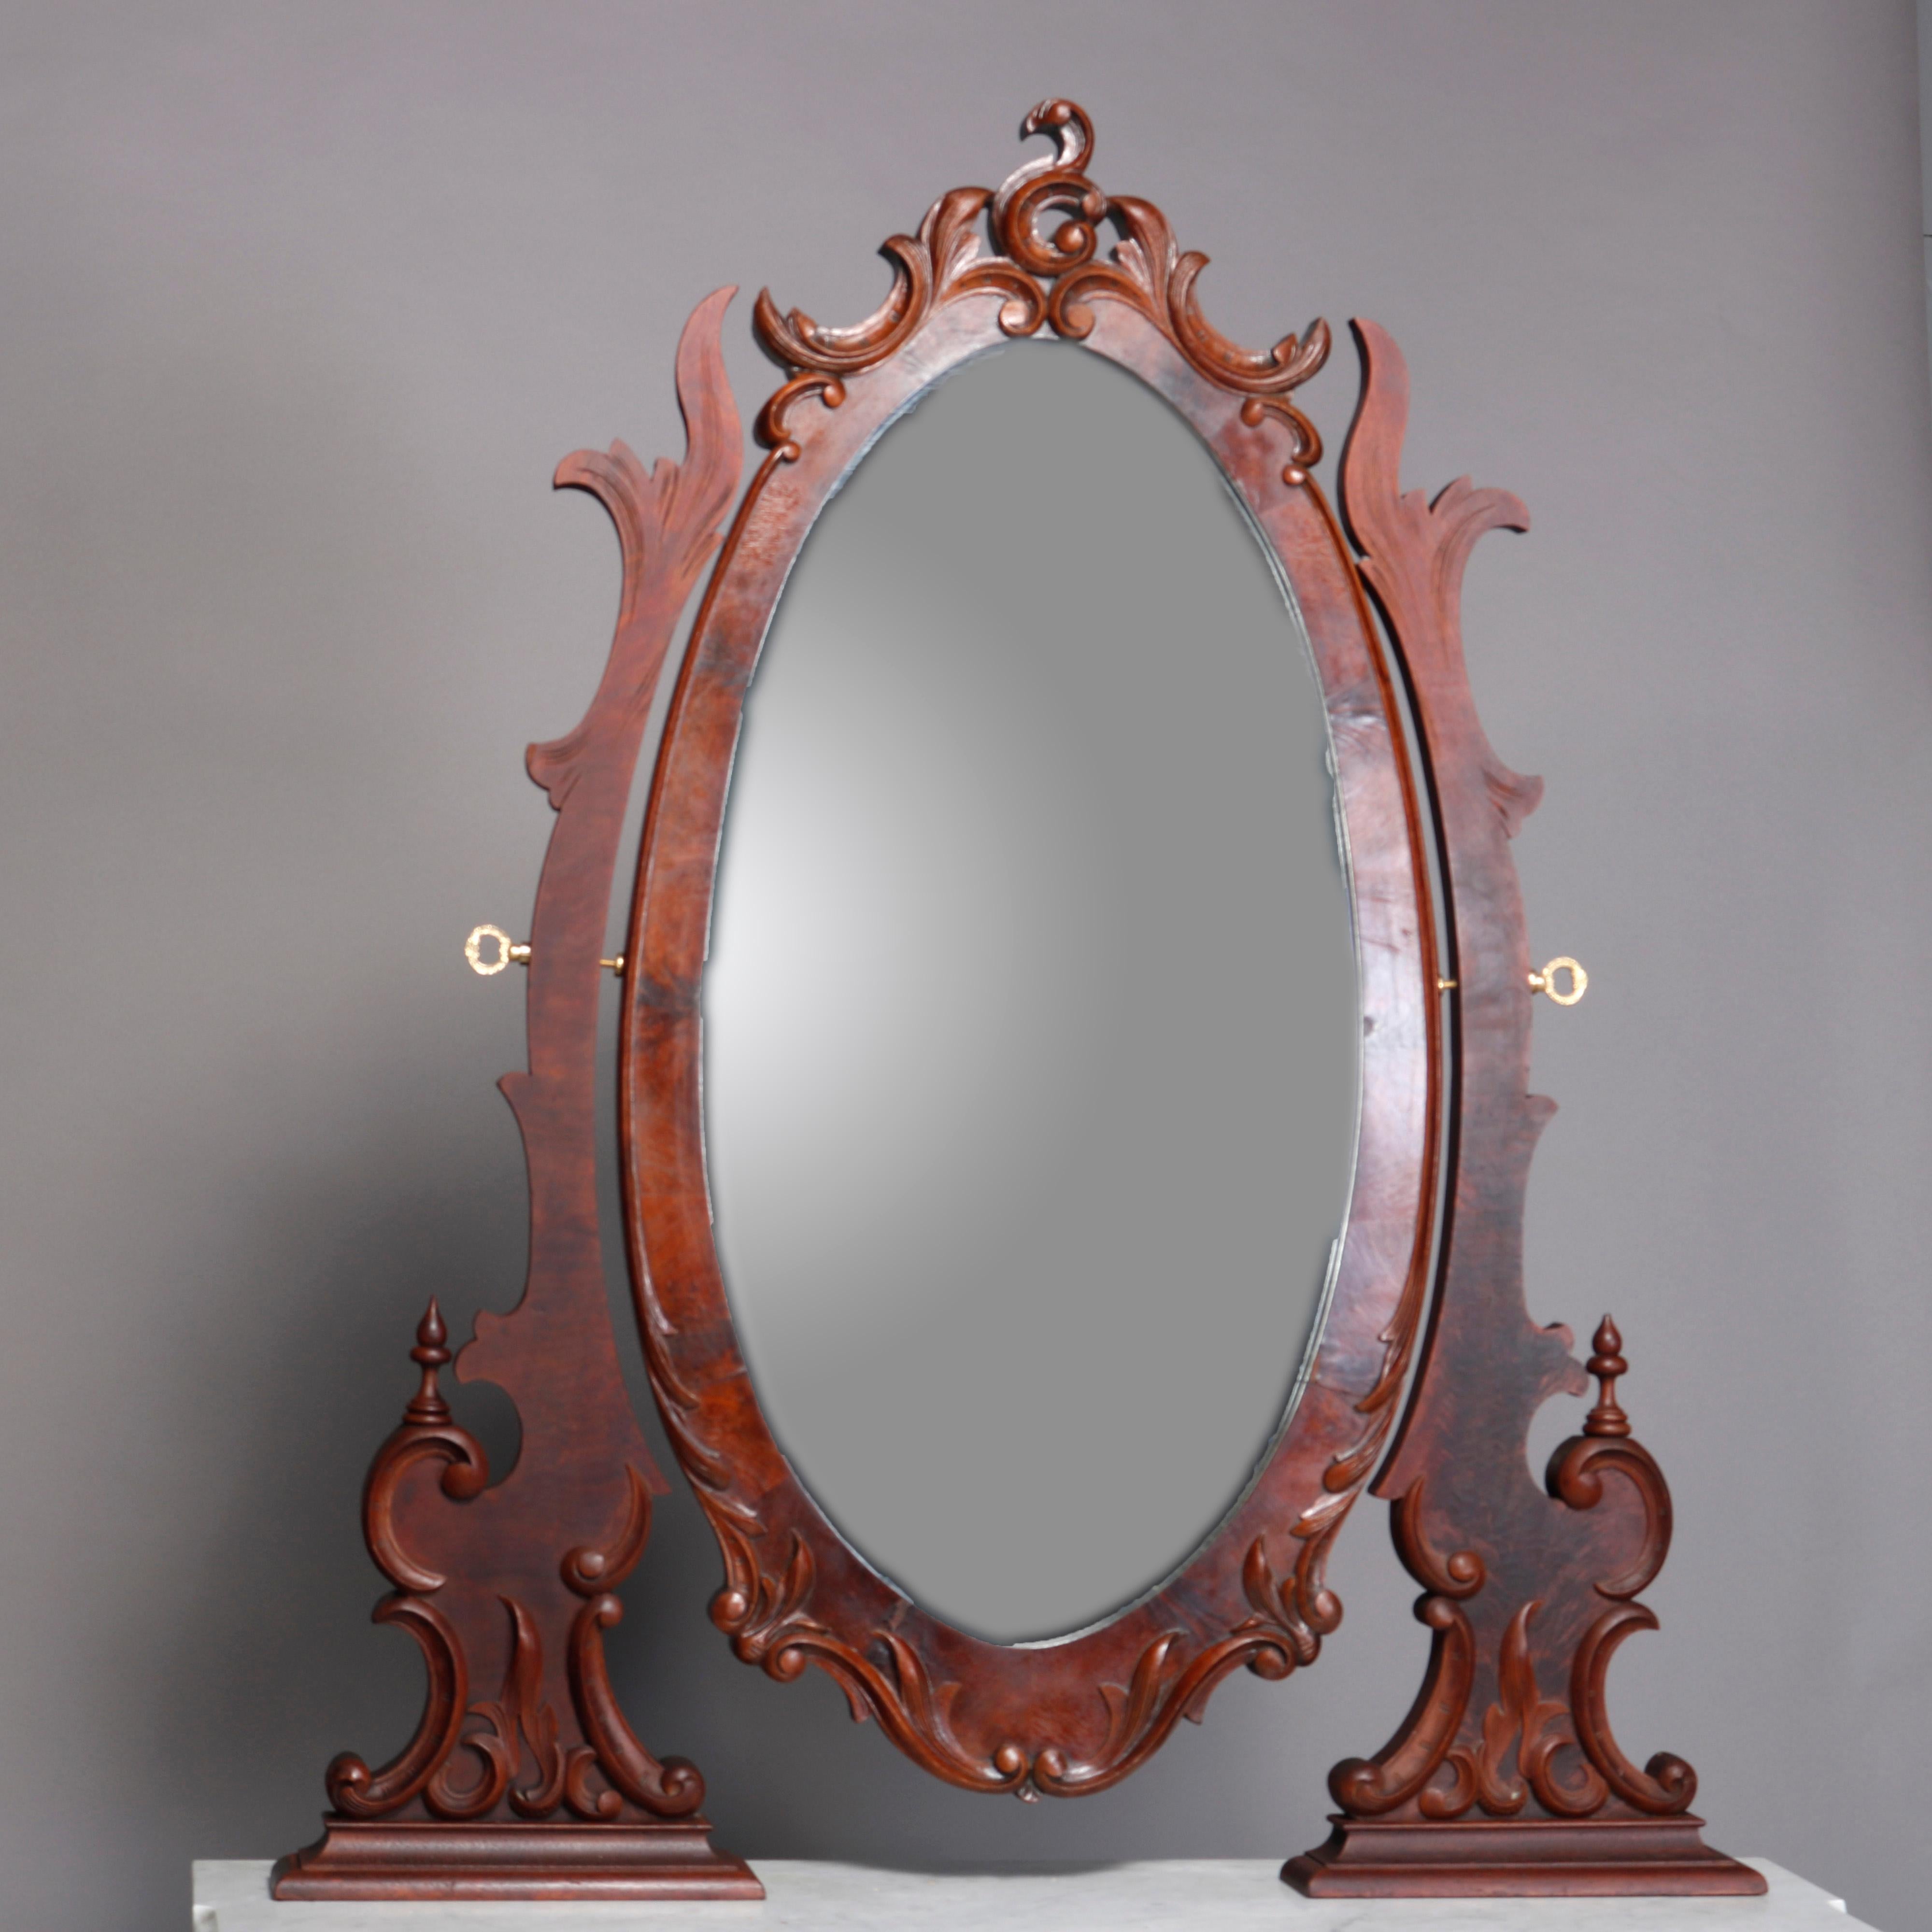 Antike Kommode aus Mahagoni im Renaissance-Stil mit einem großen ovalen Spiegel mit einem Rahmen aus Blättern und Schnecken, der die Kommode überragt, mit einer geformten und abgeschrägten Marmorplatte und einem Gehäuse mit drei abgestuften